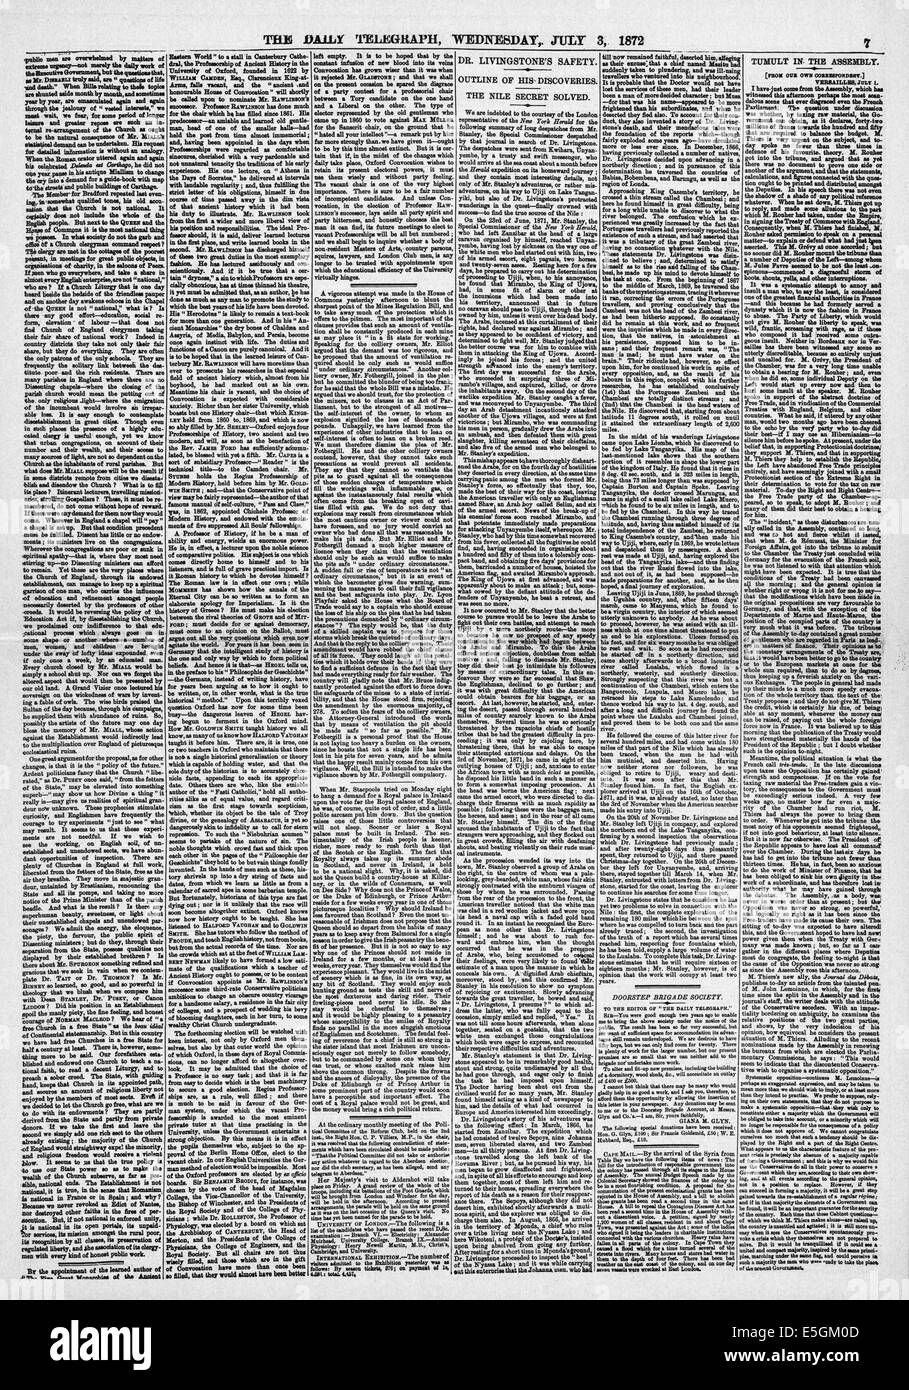 1872 daily Telegraph Seite 7 Berichterstattung der Sitzung des Dr. Livingstone und Henry Morton Stanley mit der Frage "Dr. Livingstone ich vermute"? Stockfoto